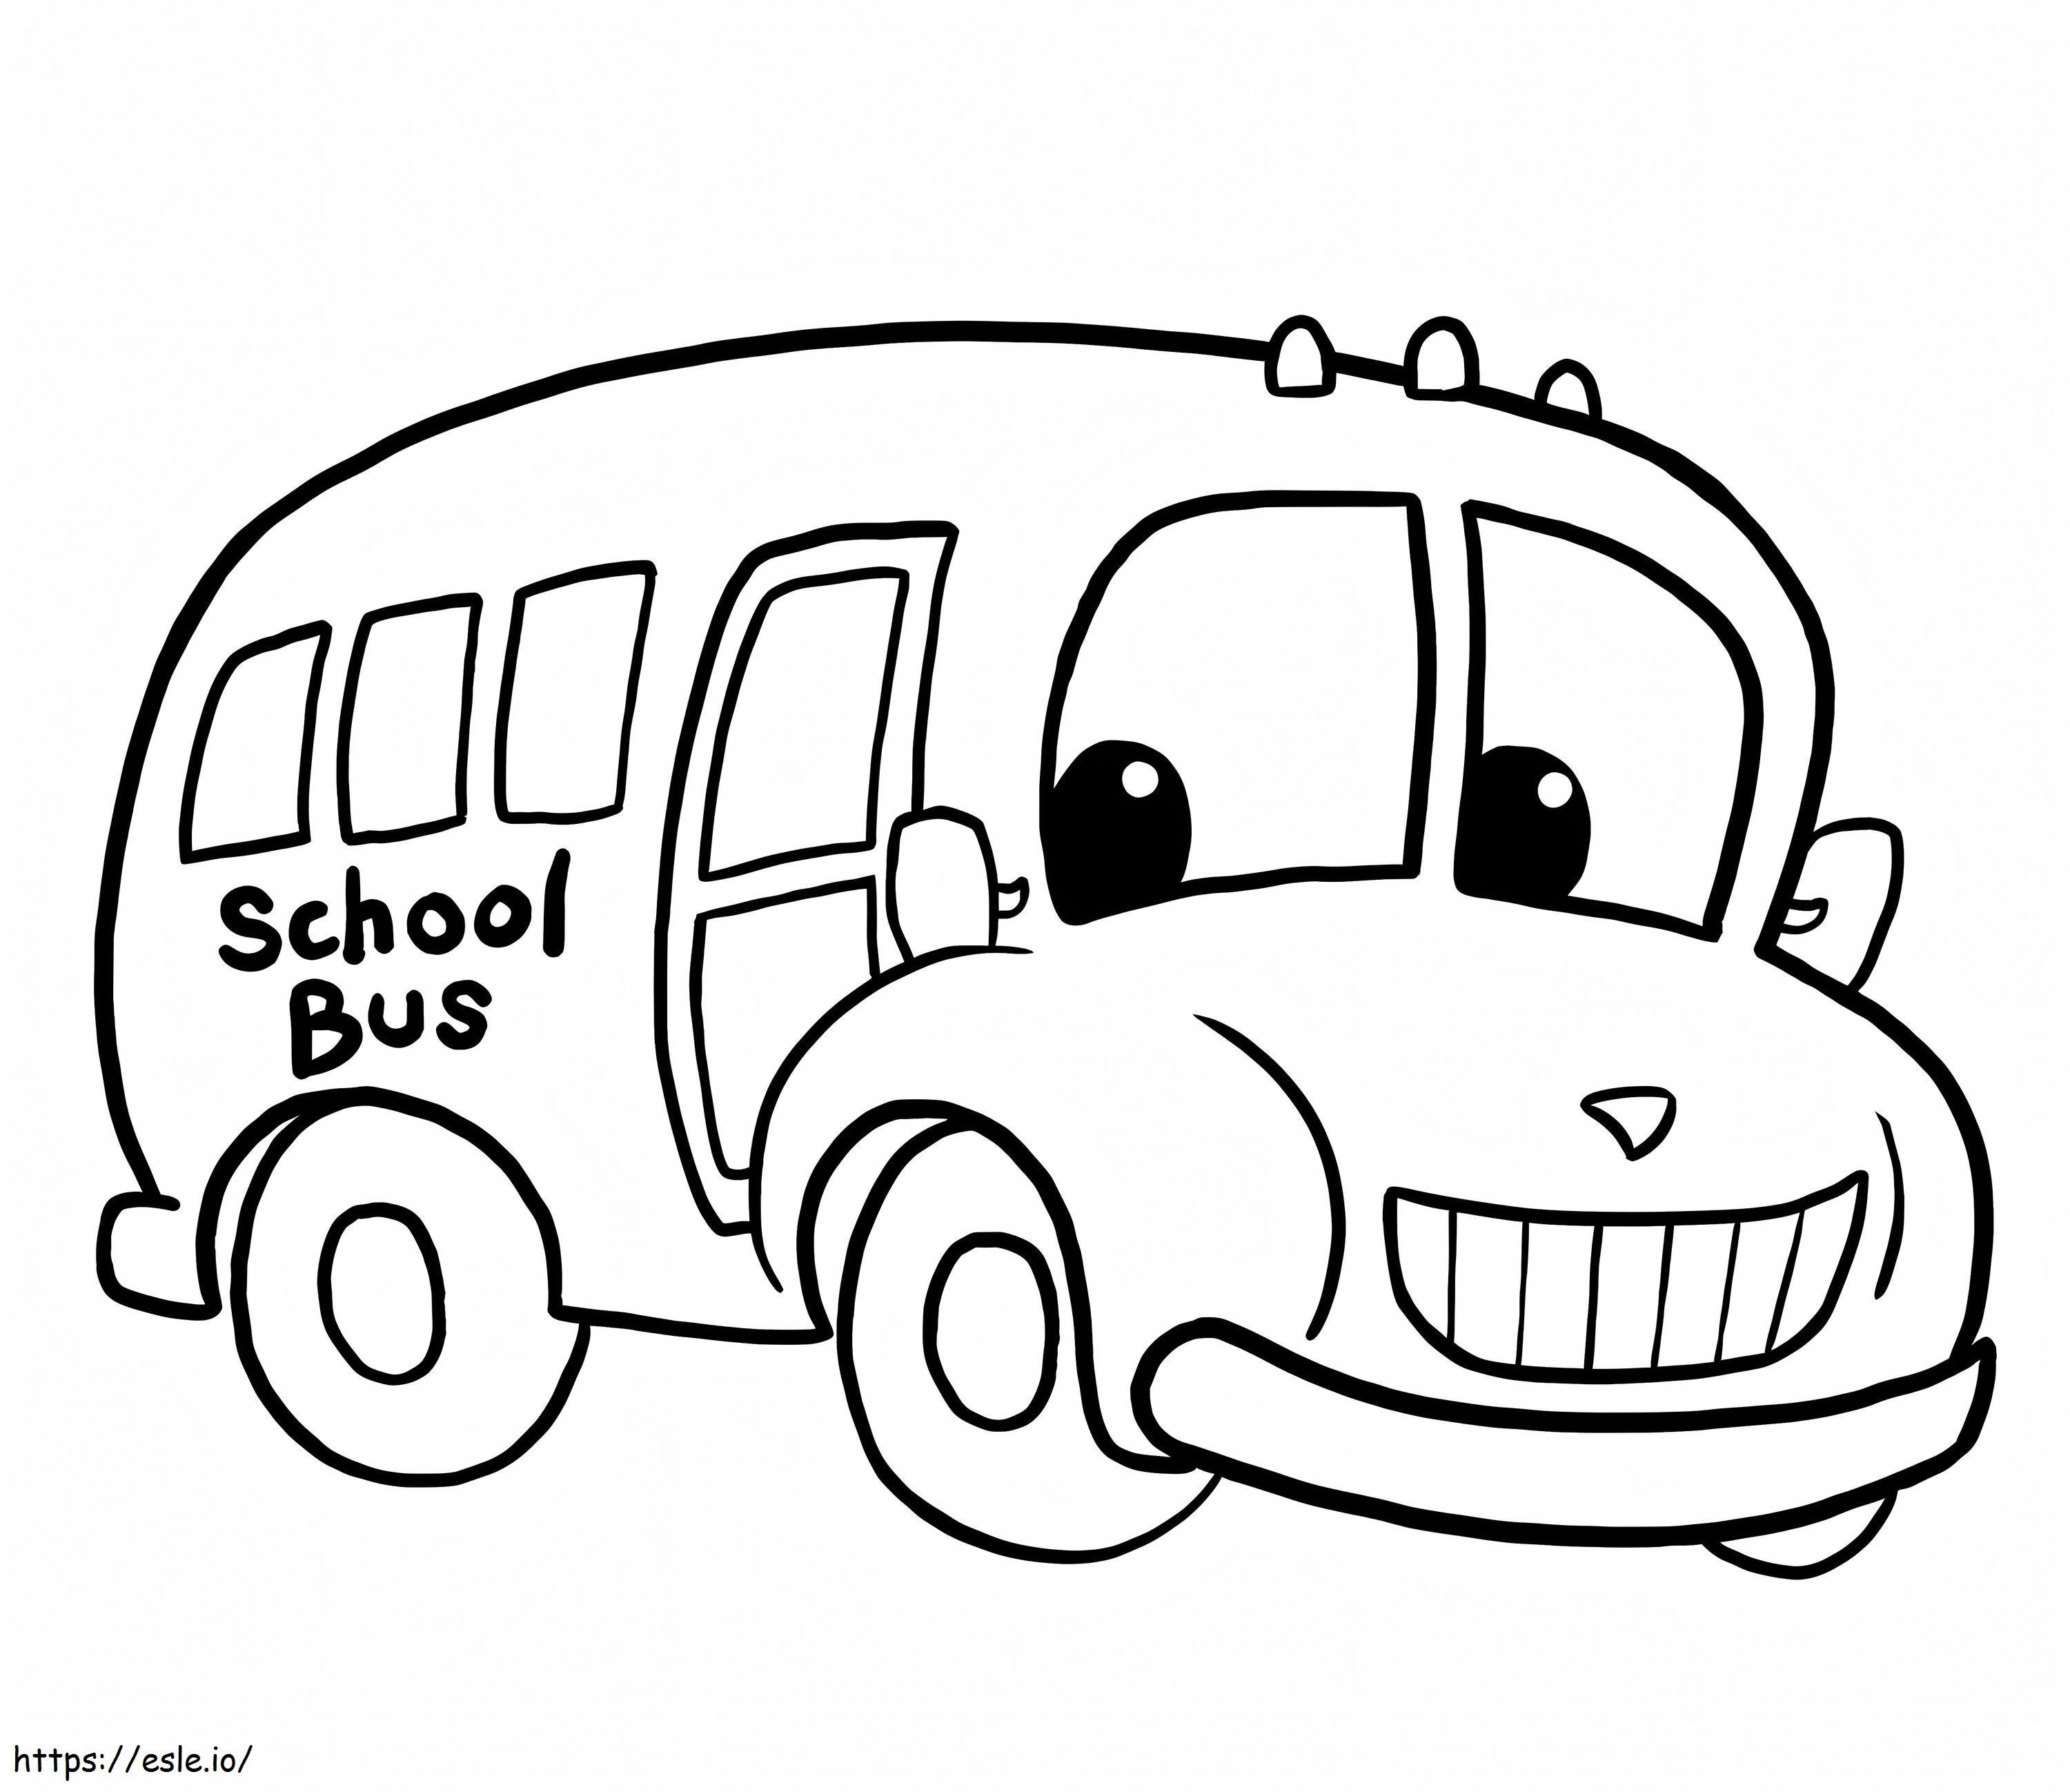 School Bus Fun coloring page